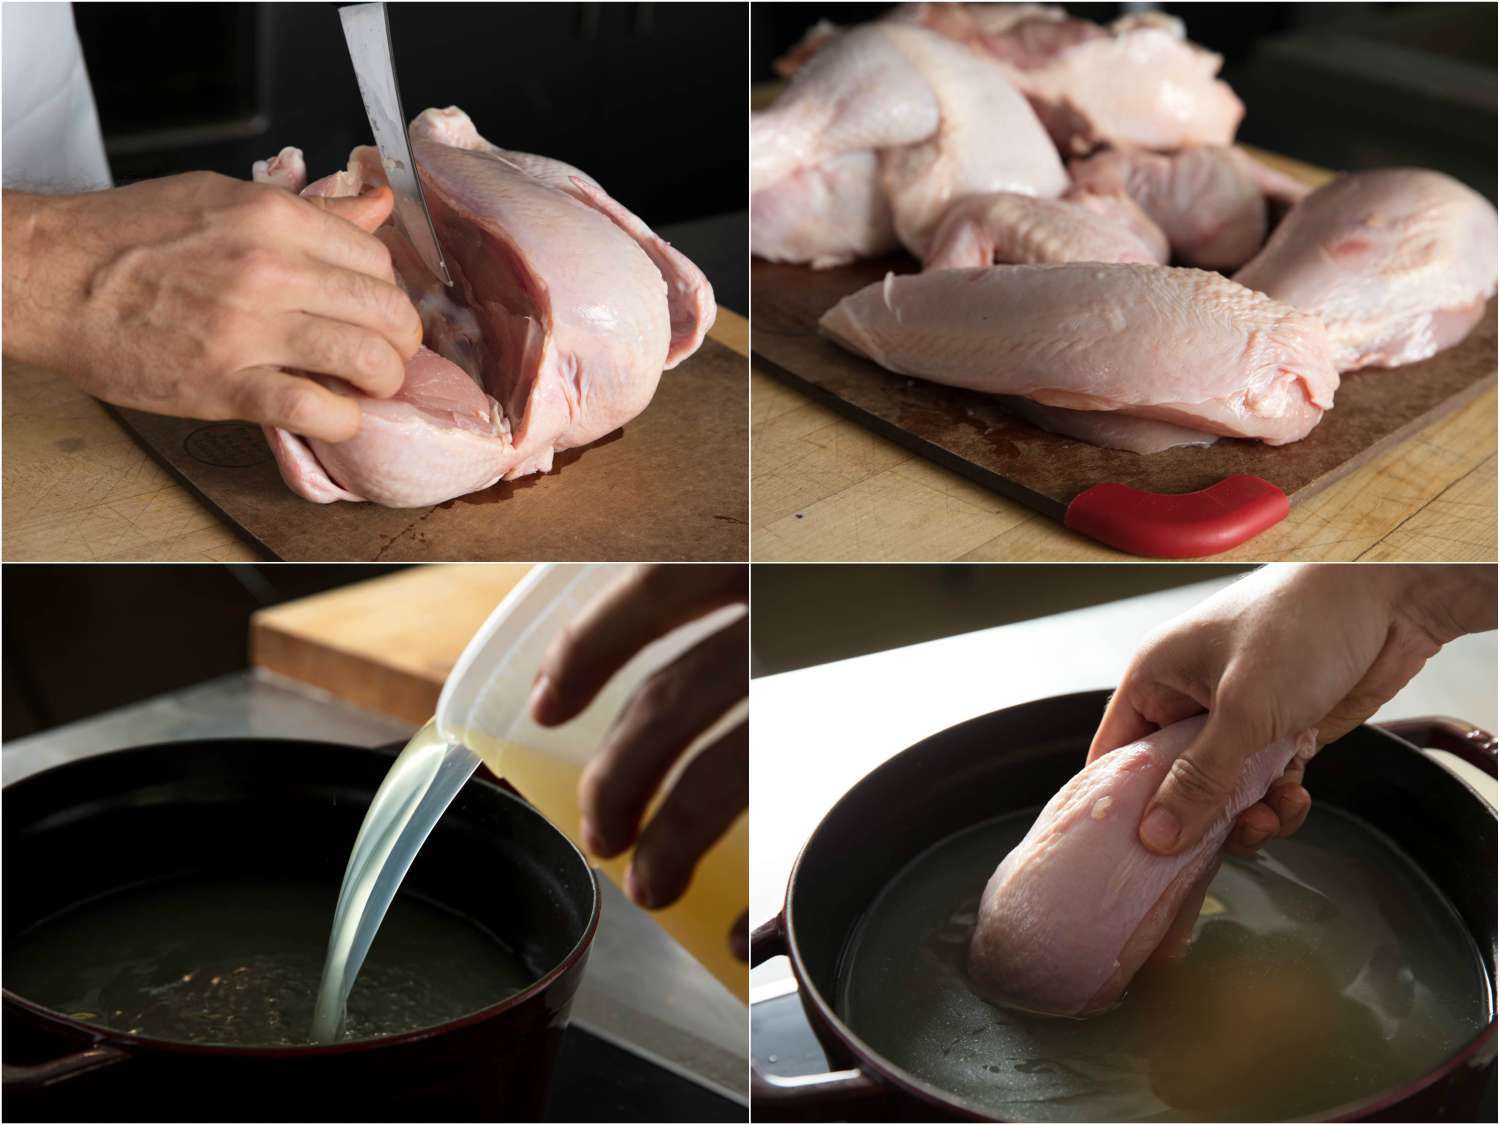 分解鸡肉加入鸡汤汤的照片拼贴:整只鸡切去鸡胸肉，鸡肉分成几部分，往锅里加入高汤，把鸡肉放入高汤gydF4y2Ba